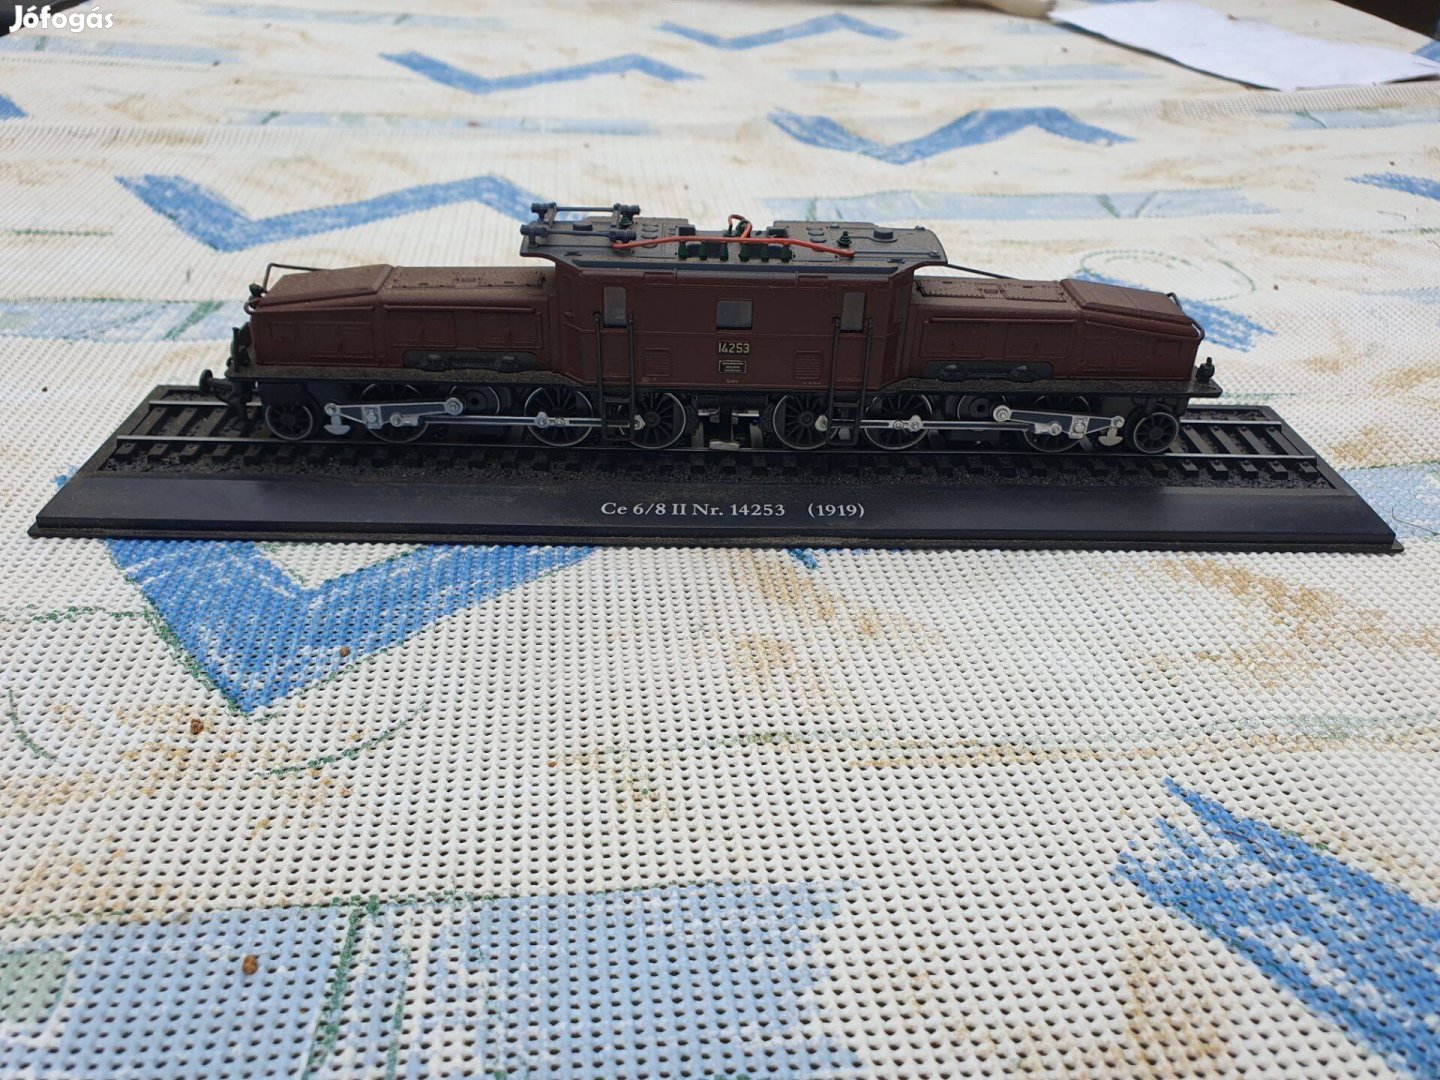 Ce 6/8 II No.14253 (1919) vasúti modell